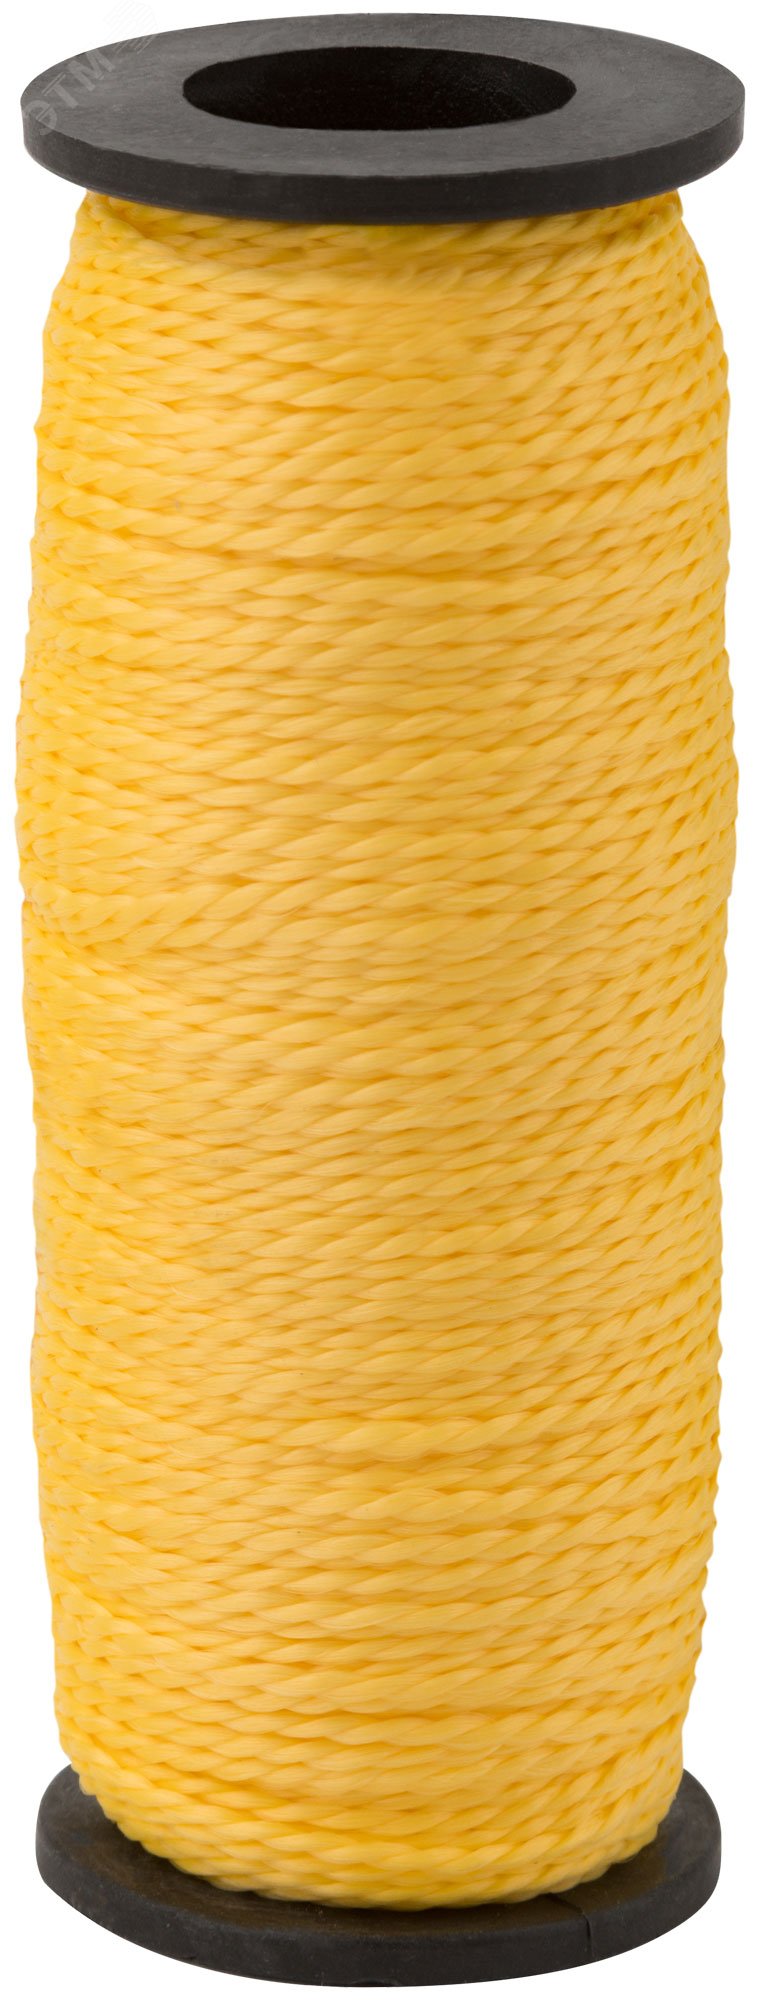 Шнур разметочный капроновый 1.5 мм х 50 м, желтый 4712 КУРС - превью